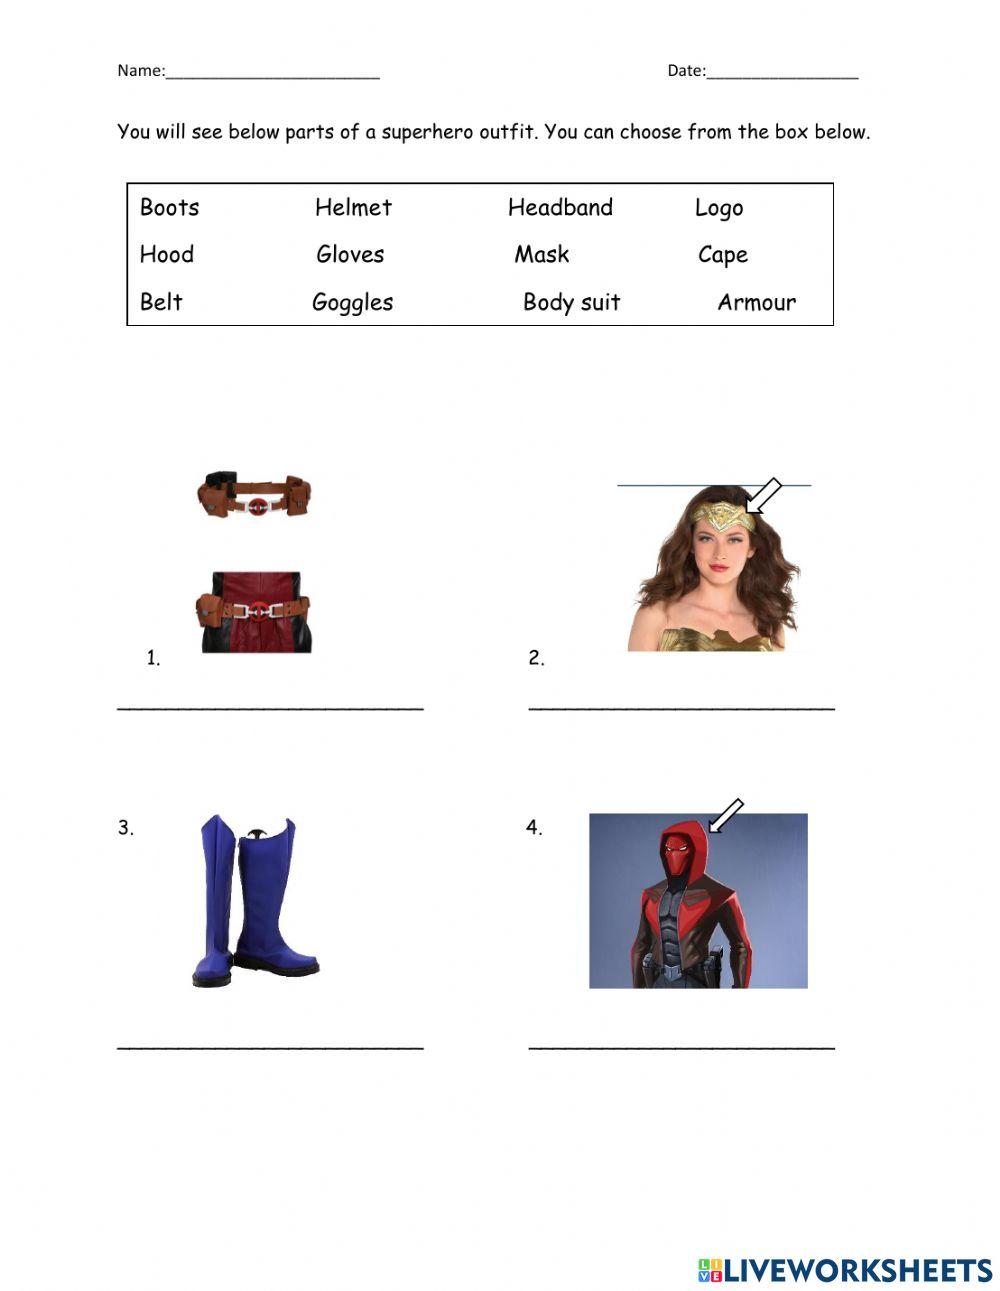 Superhero costume parts